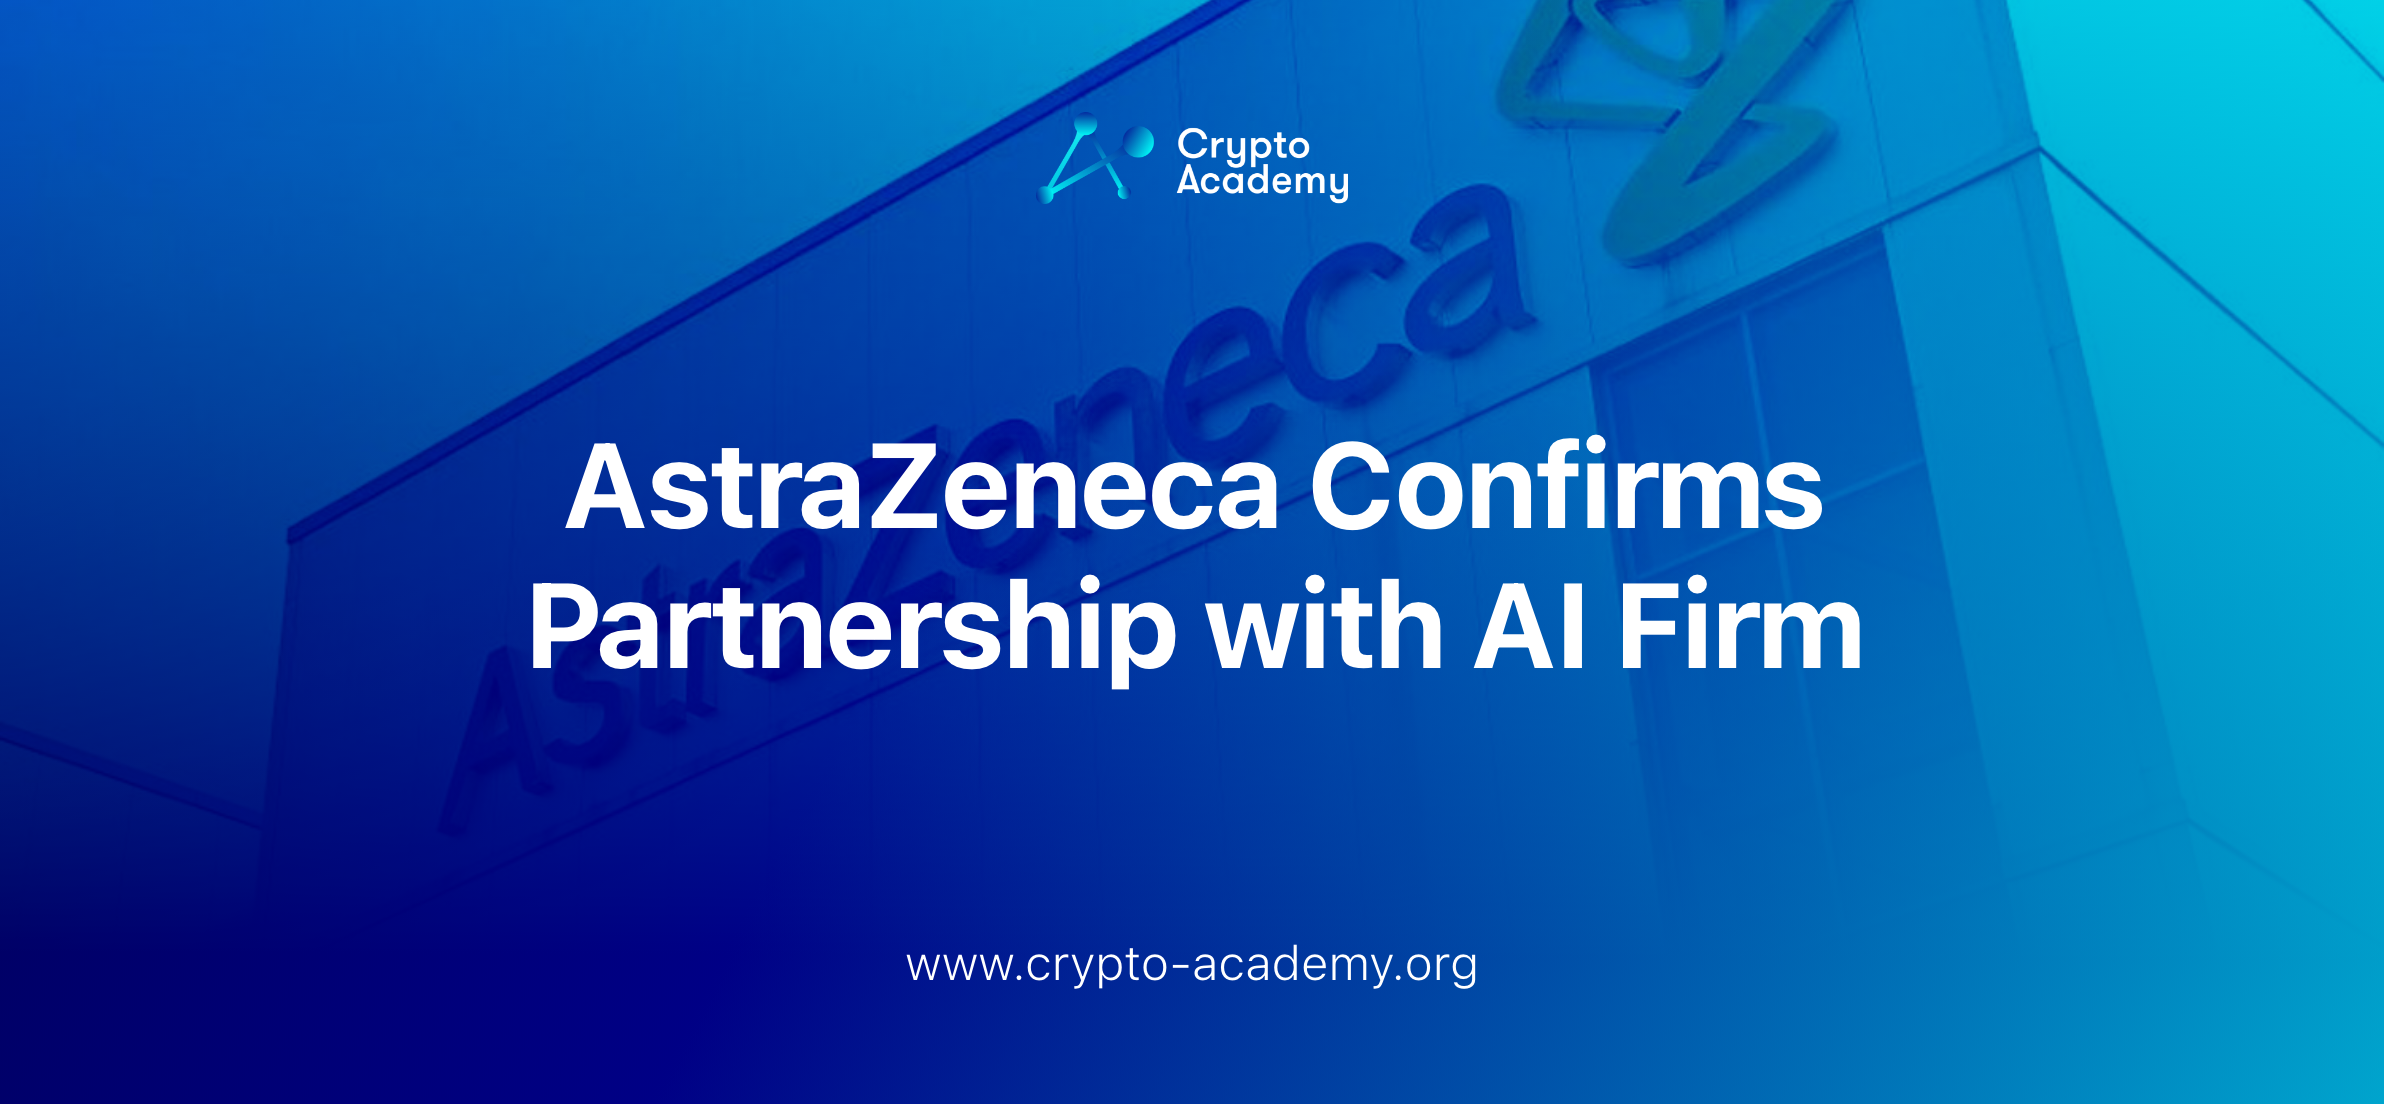 AstraZeneca Confirms Partnership with AI Firm